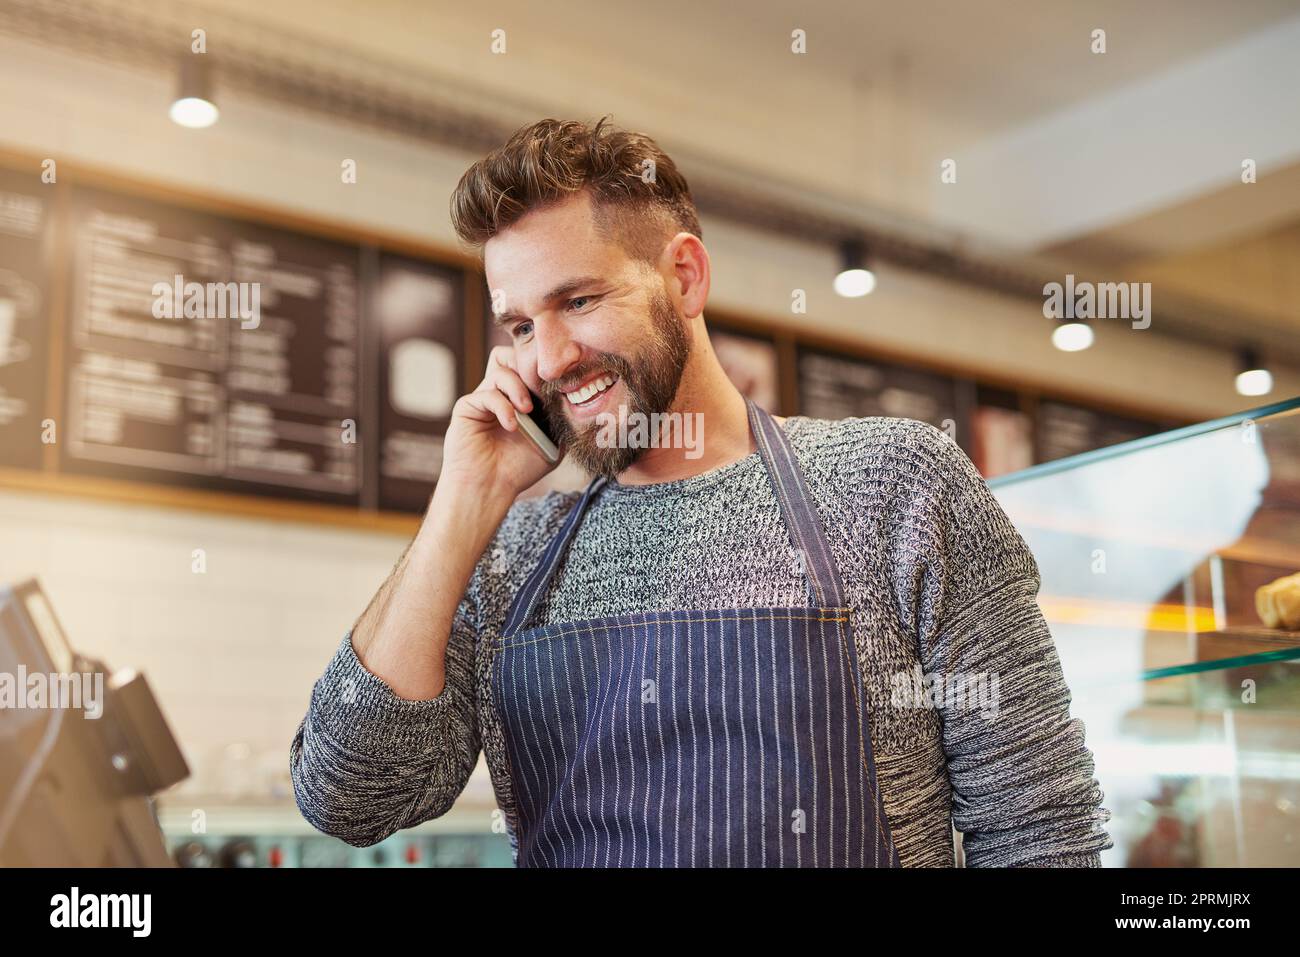 Ja, Ihre Bestellung ist bereit für die Abholung. Ein Unternehmer im Gespräch auf einem Handy in seinem Café. Stockfoto